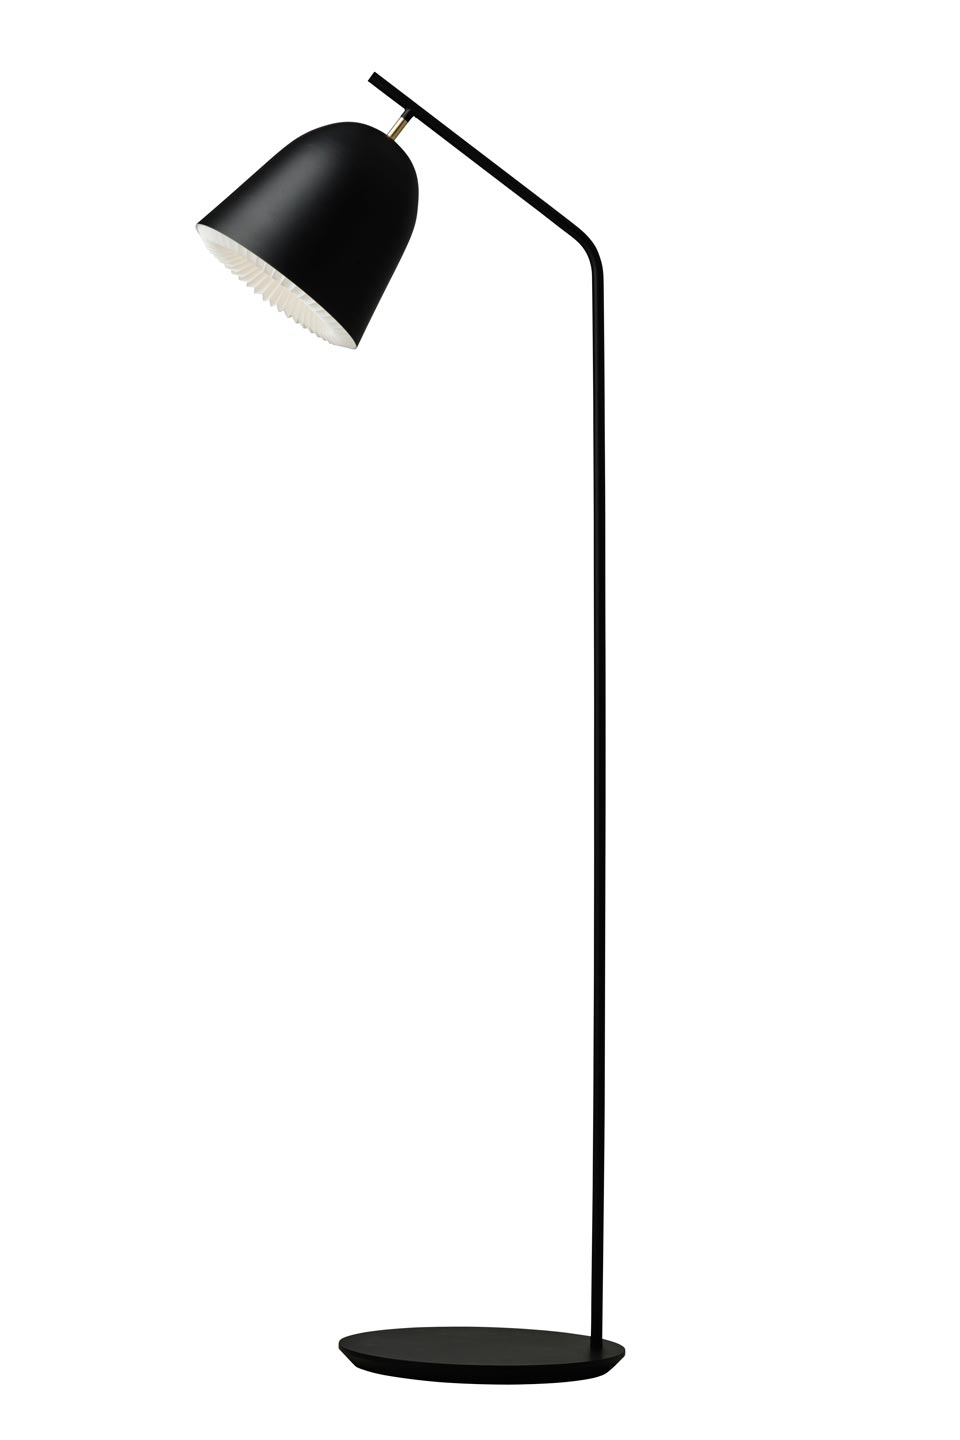 Cache lampadaire en cloche noire: Le Klint, design scandinave